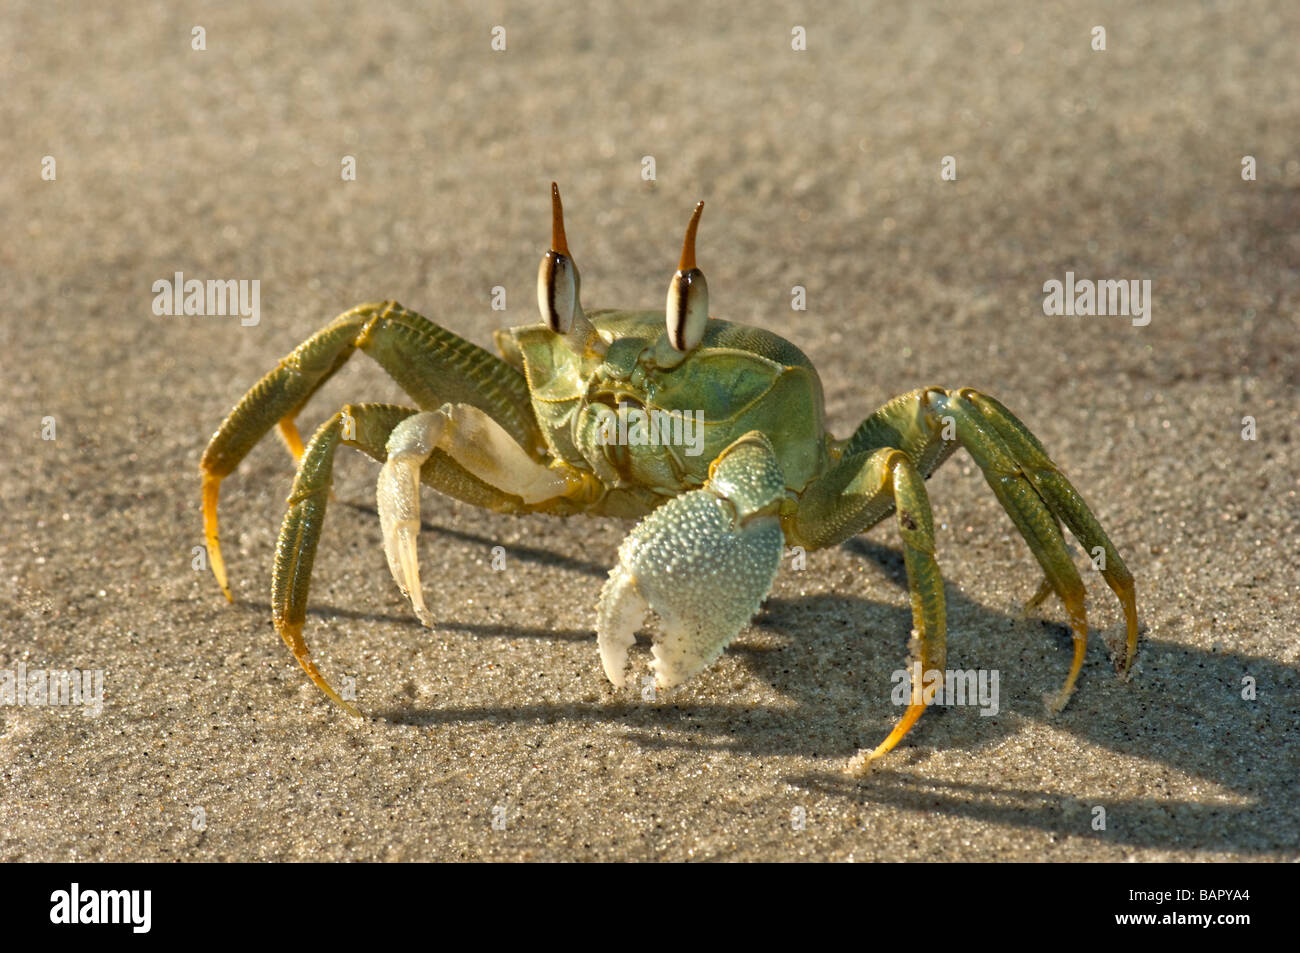 Ghost cornu a remis le crabe vert madagascar Nosy Kely beach runner course run sable mer terre OCYPODE Ocypode madagascar Banque D'Images